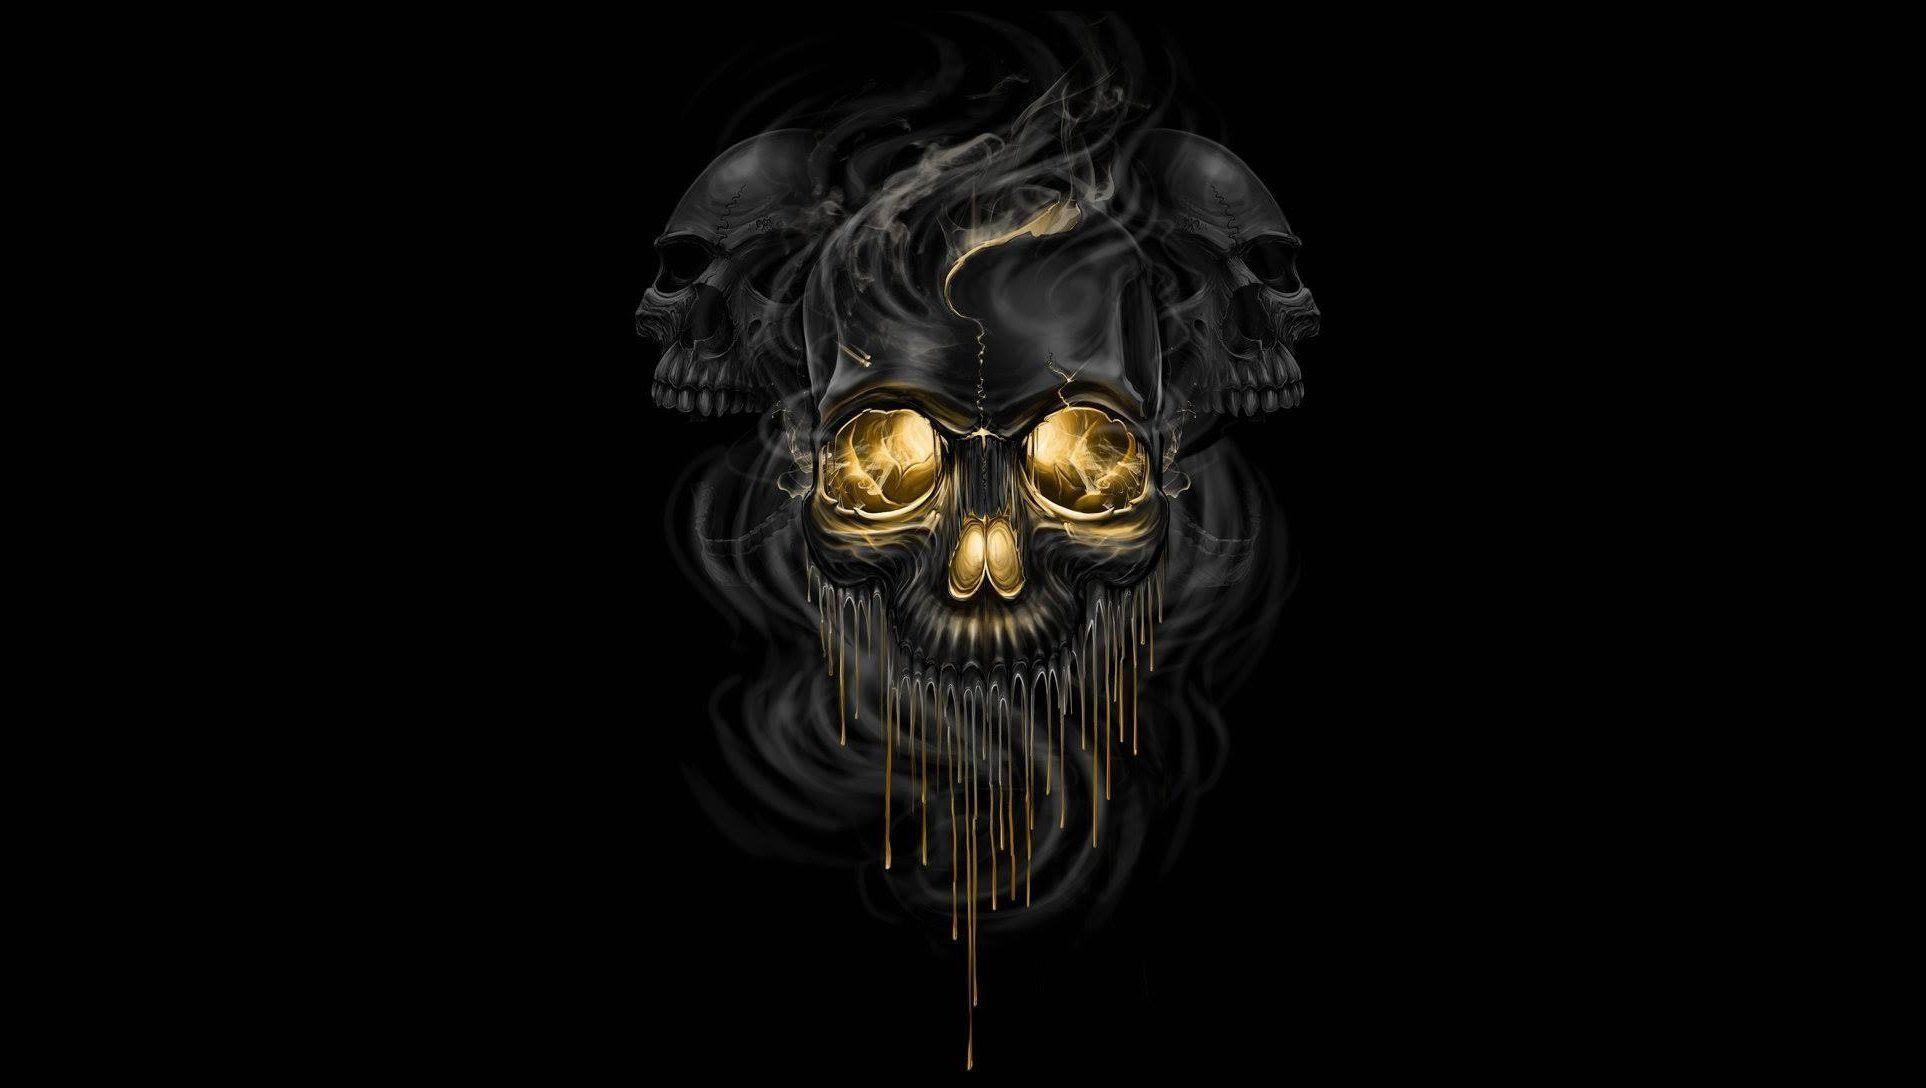 Smoking skull Wallpaper by CrazyMforiginal on DeviantArt